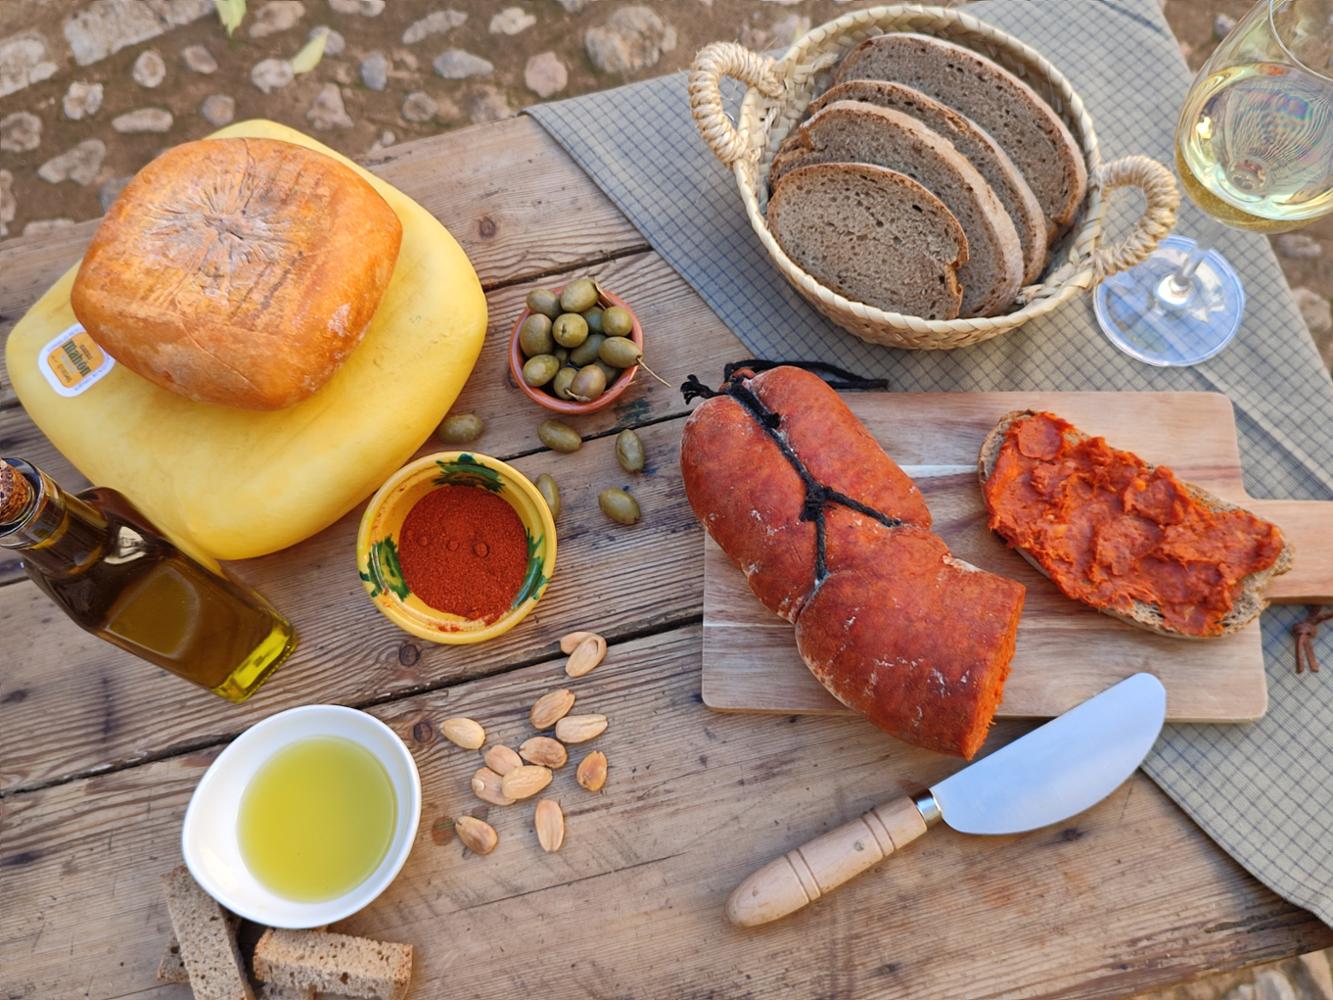 Nou de cada deu consumidors de Mallorca consideren que la qualitat dels aliments és el factor més important a l’hora d’anar a comprar - Notícies - Illes Balears - Productes agroalimentaris, denominacions d'origen i gastronomia balear